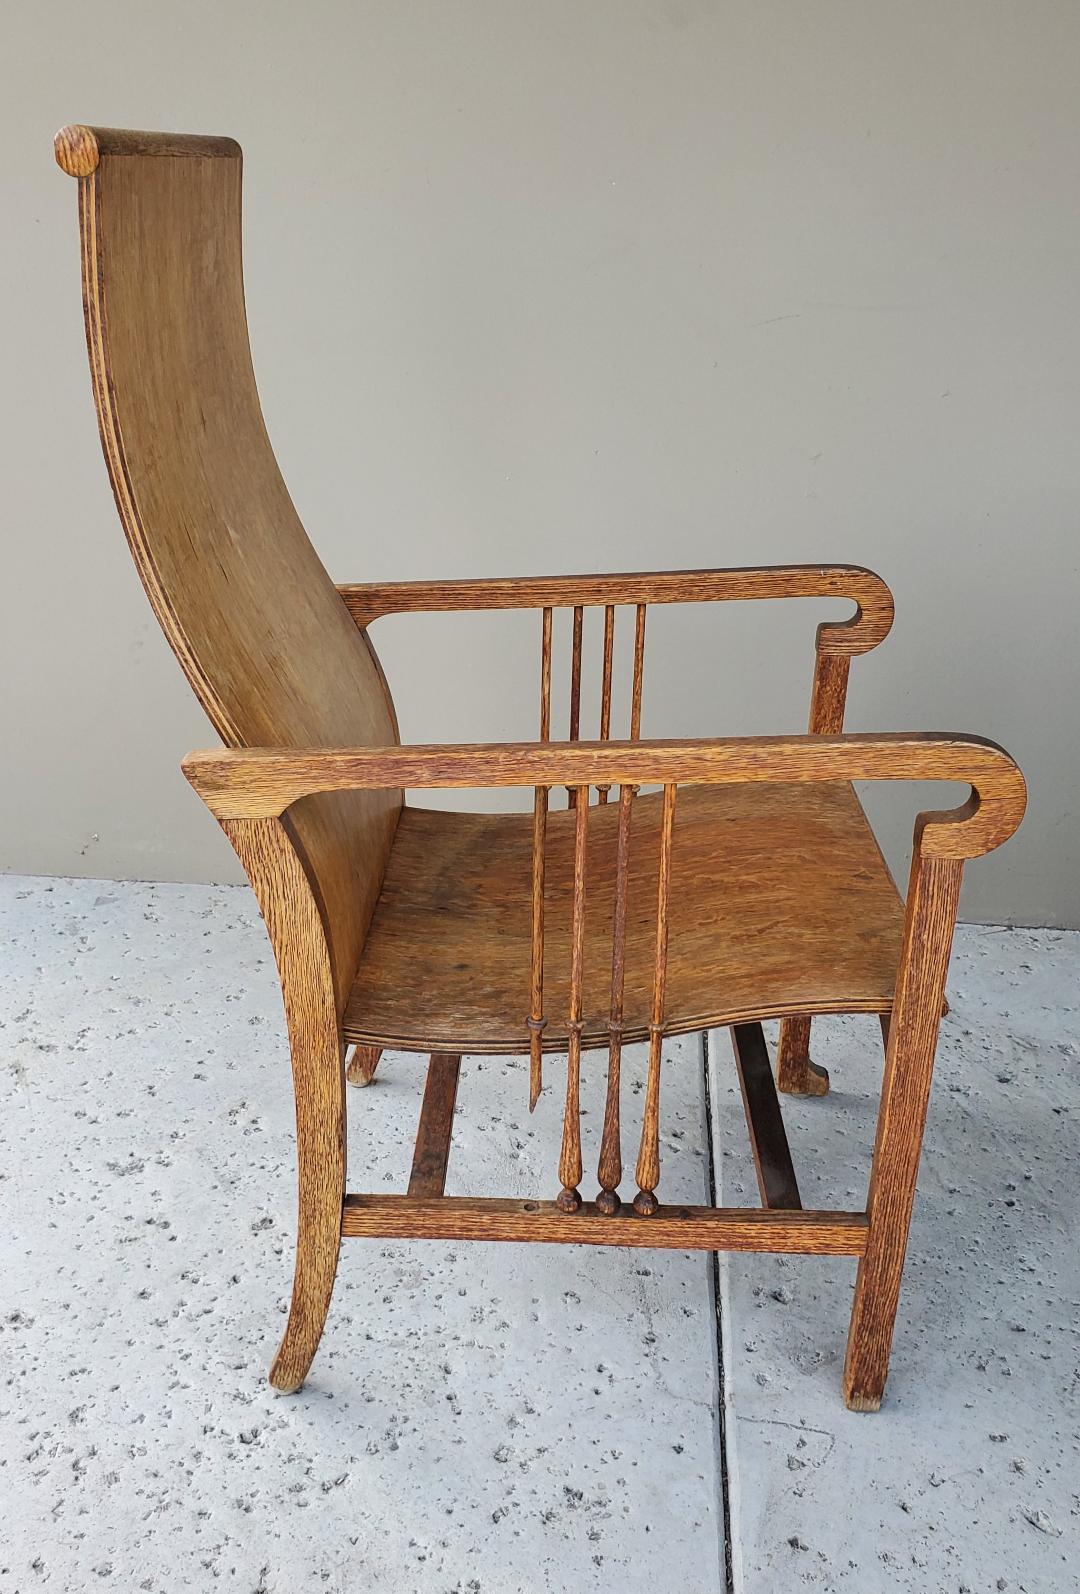 Chêne Ancienne chaise à haut dossier Mission Arts & Crafts Craftsman en chêne scié sur quartier en vente